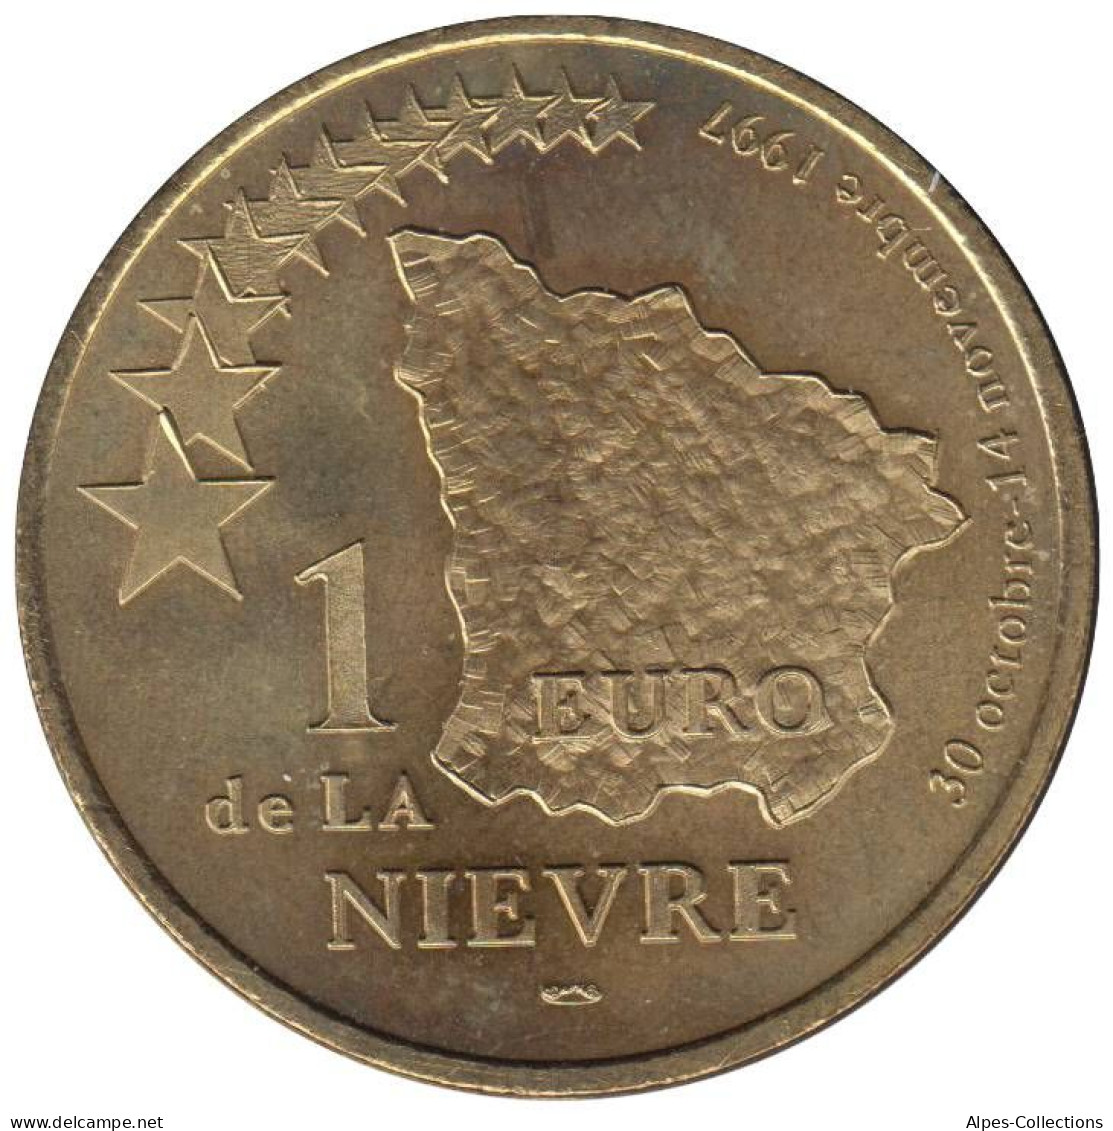 NIEVRE - EU0010.3 - 1 EURO DES VILLES - Réf: T341 - 1997 - Euros Of The Cities